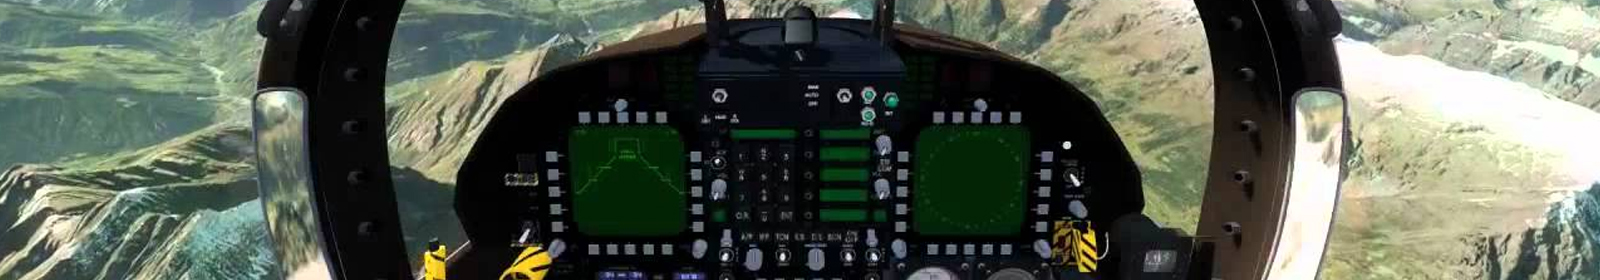 simulador de vuelo para el EC175 de airbus helicopters